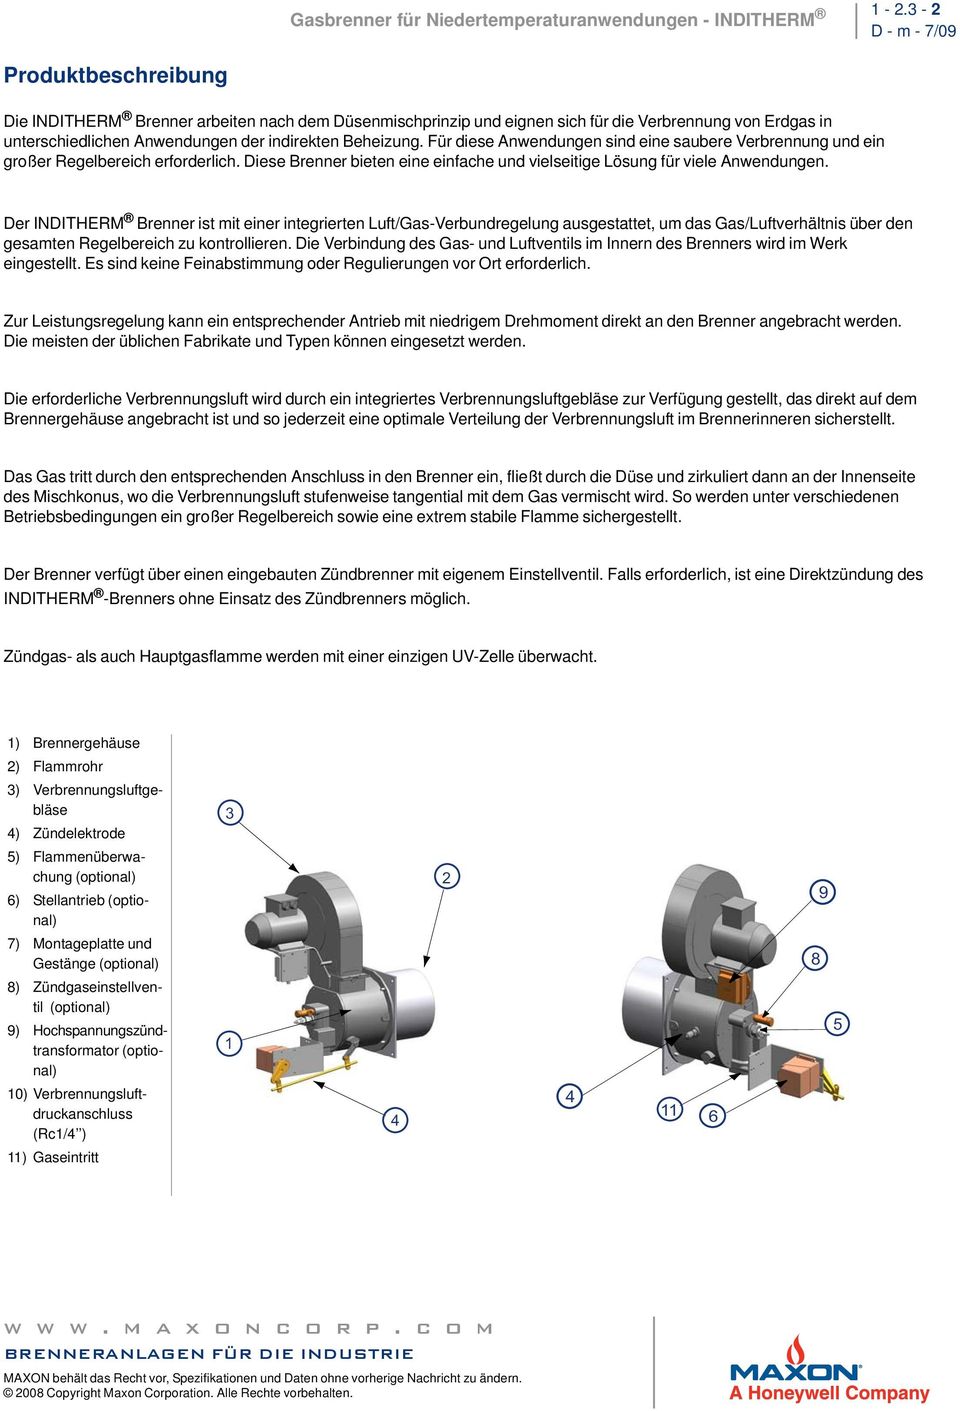 Der INDITHERM Brenner ist mit einer integrierten Luft/Gas-Verbundregelung ausgestattet, um das Gas/Luftverhältnis über den gesamten Regelbereich zu kontrollieren.